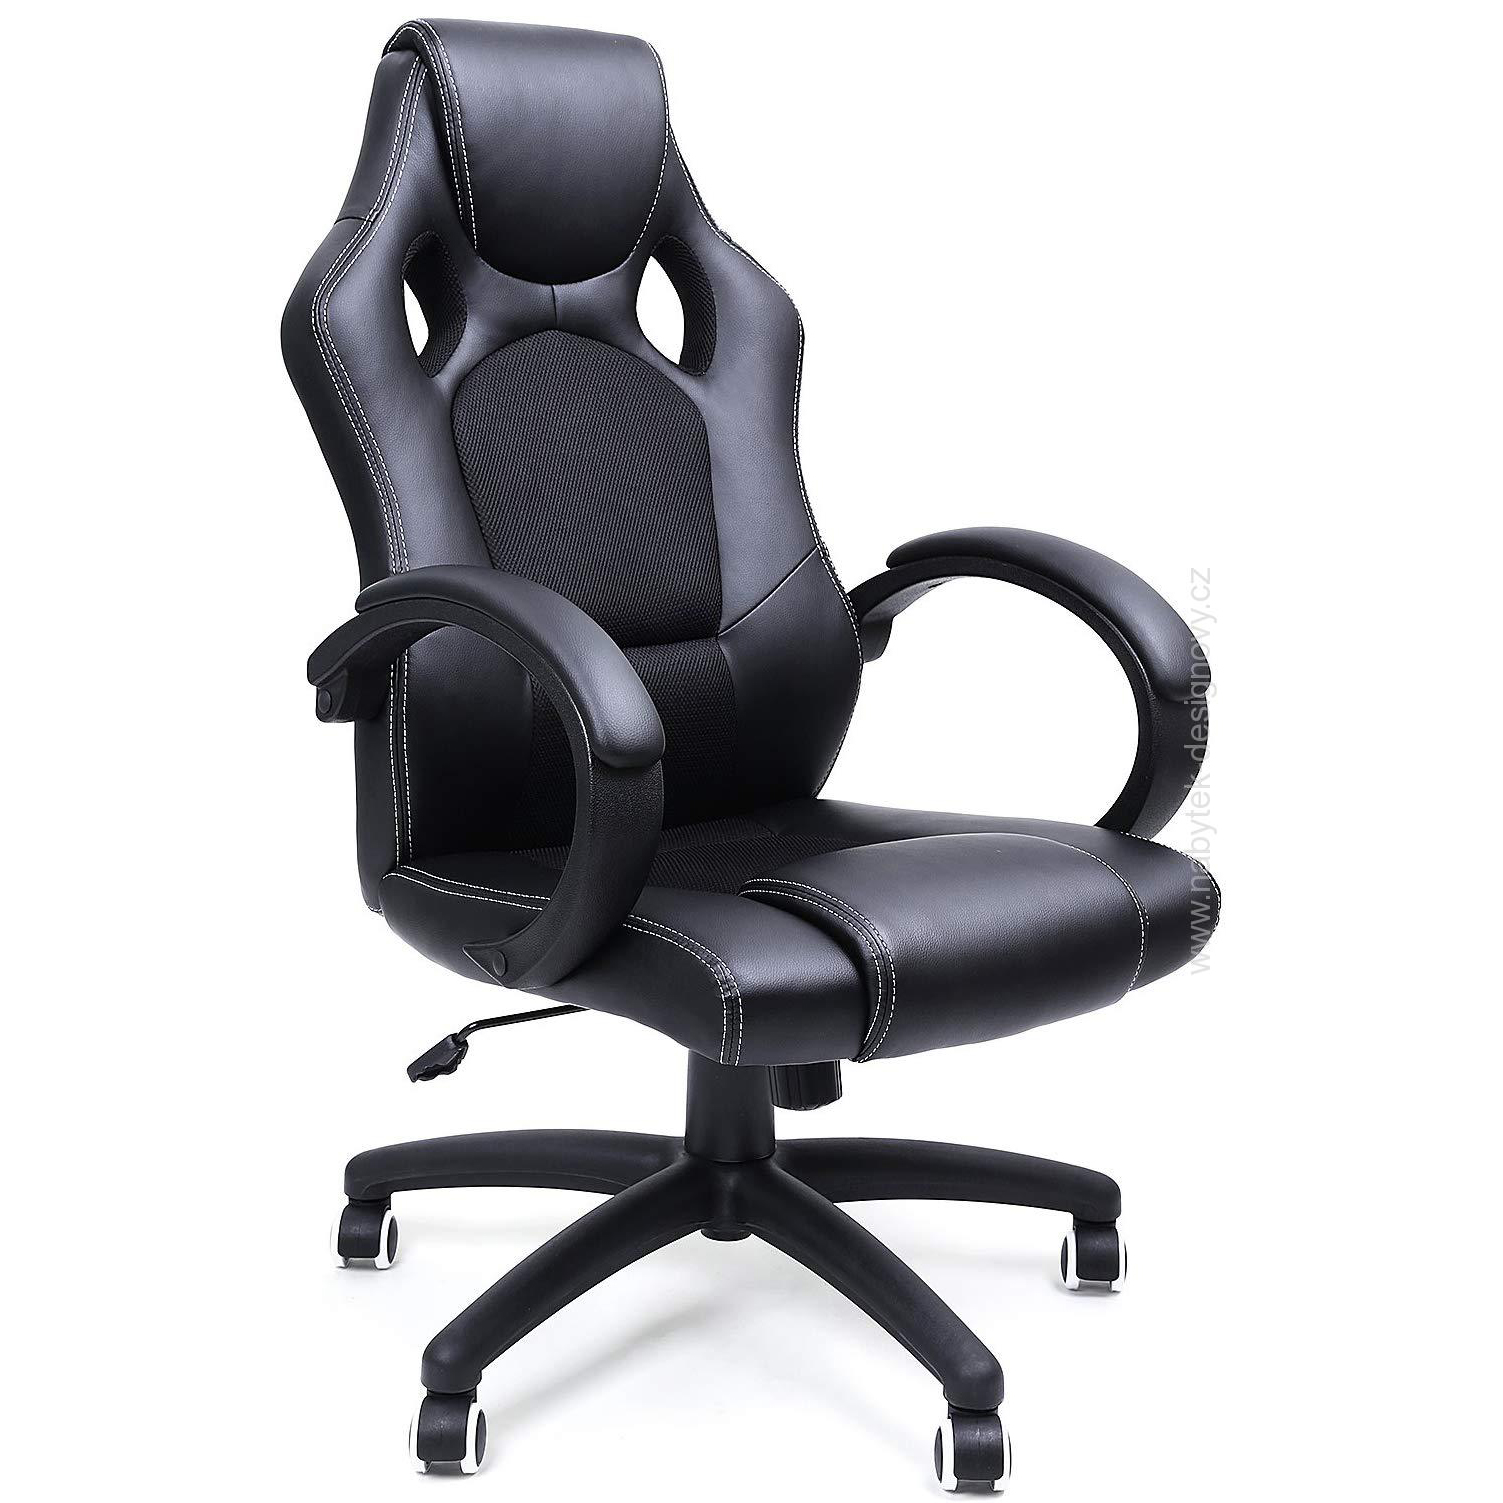 Kancelářská židle Racing II Black, herní křeslo, racing design, nosnost 150kg